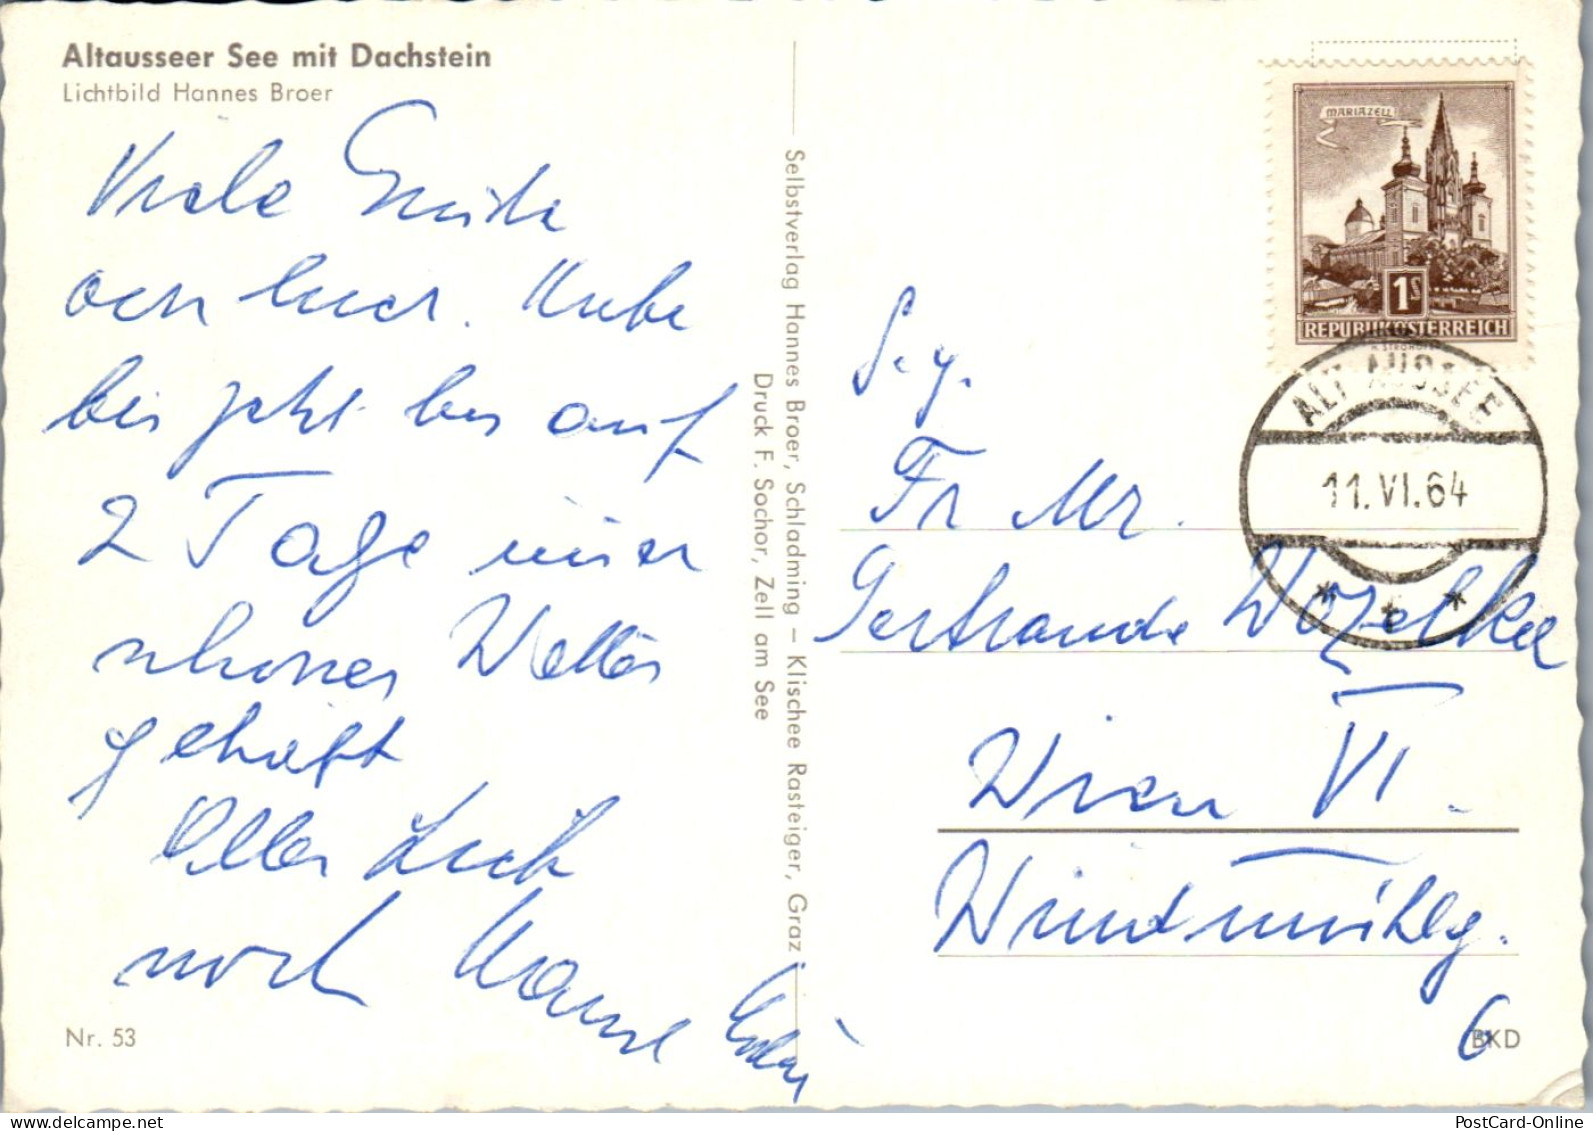 44762 - Steiermark - Altaussee , Altausseersee Mit Dachstein - Gelaufen 1964 - Ausserland